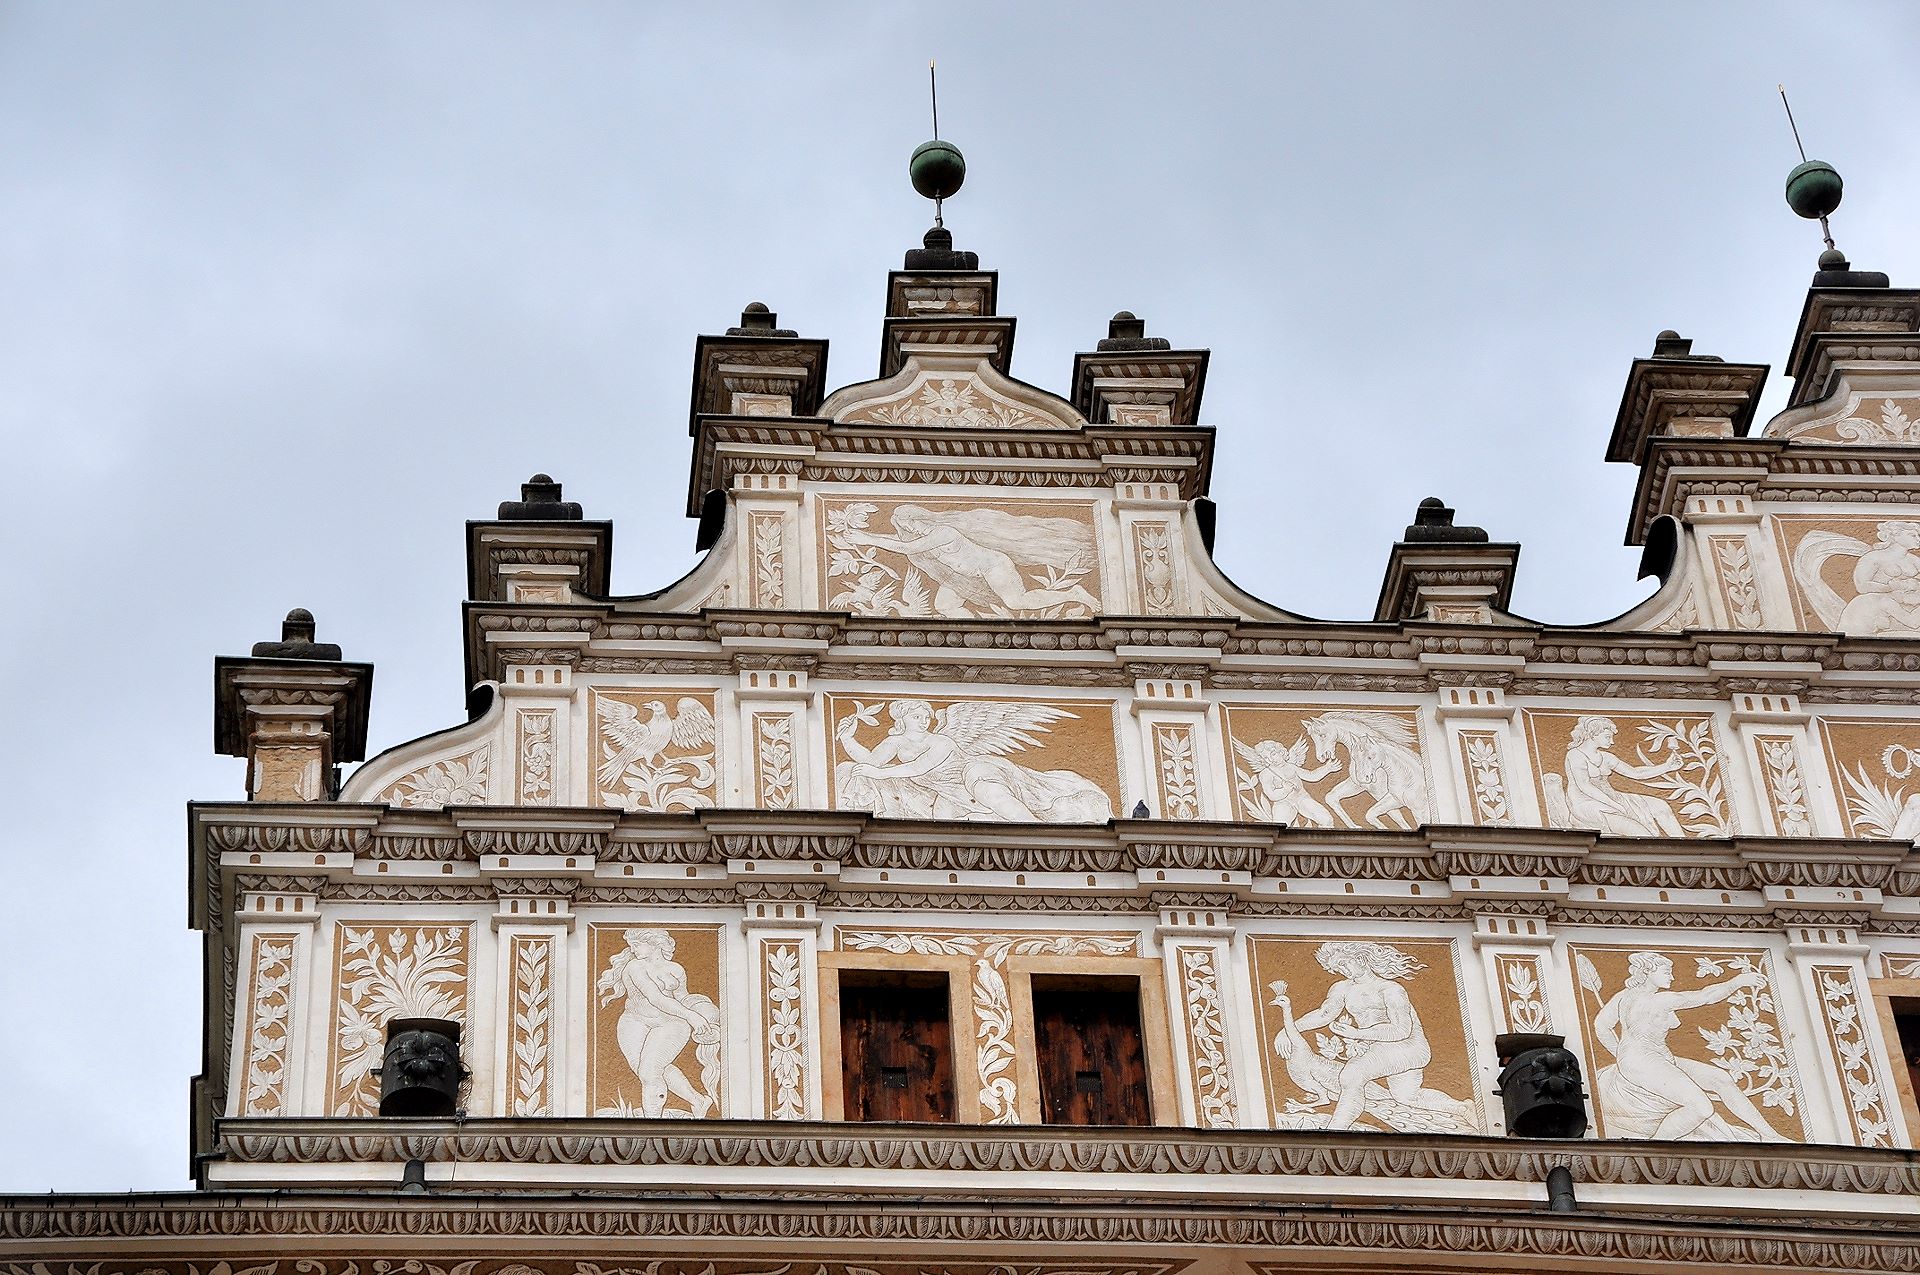 Unglaublich vielfältiger Sgraffitodekor an der Schlossfassade